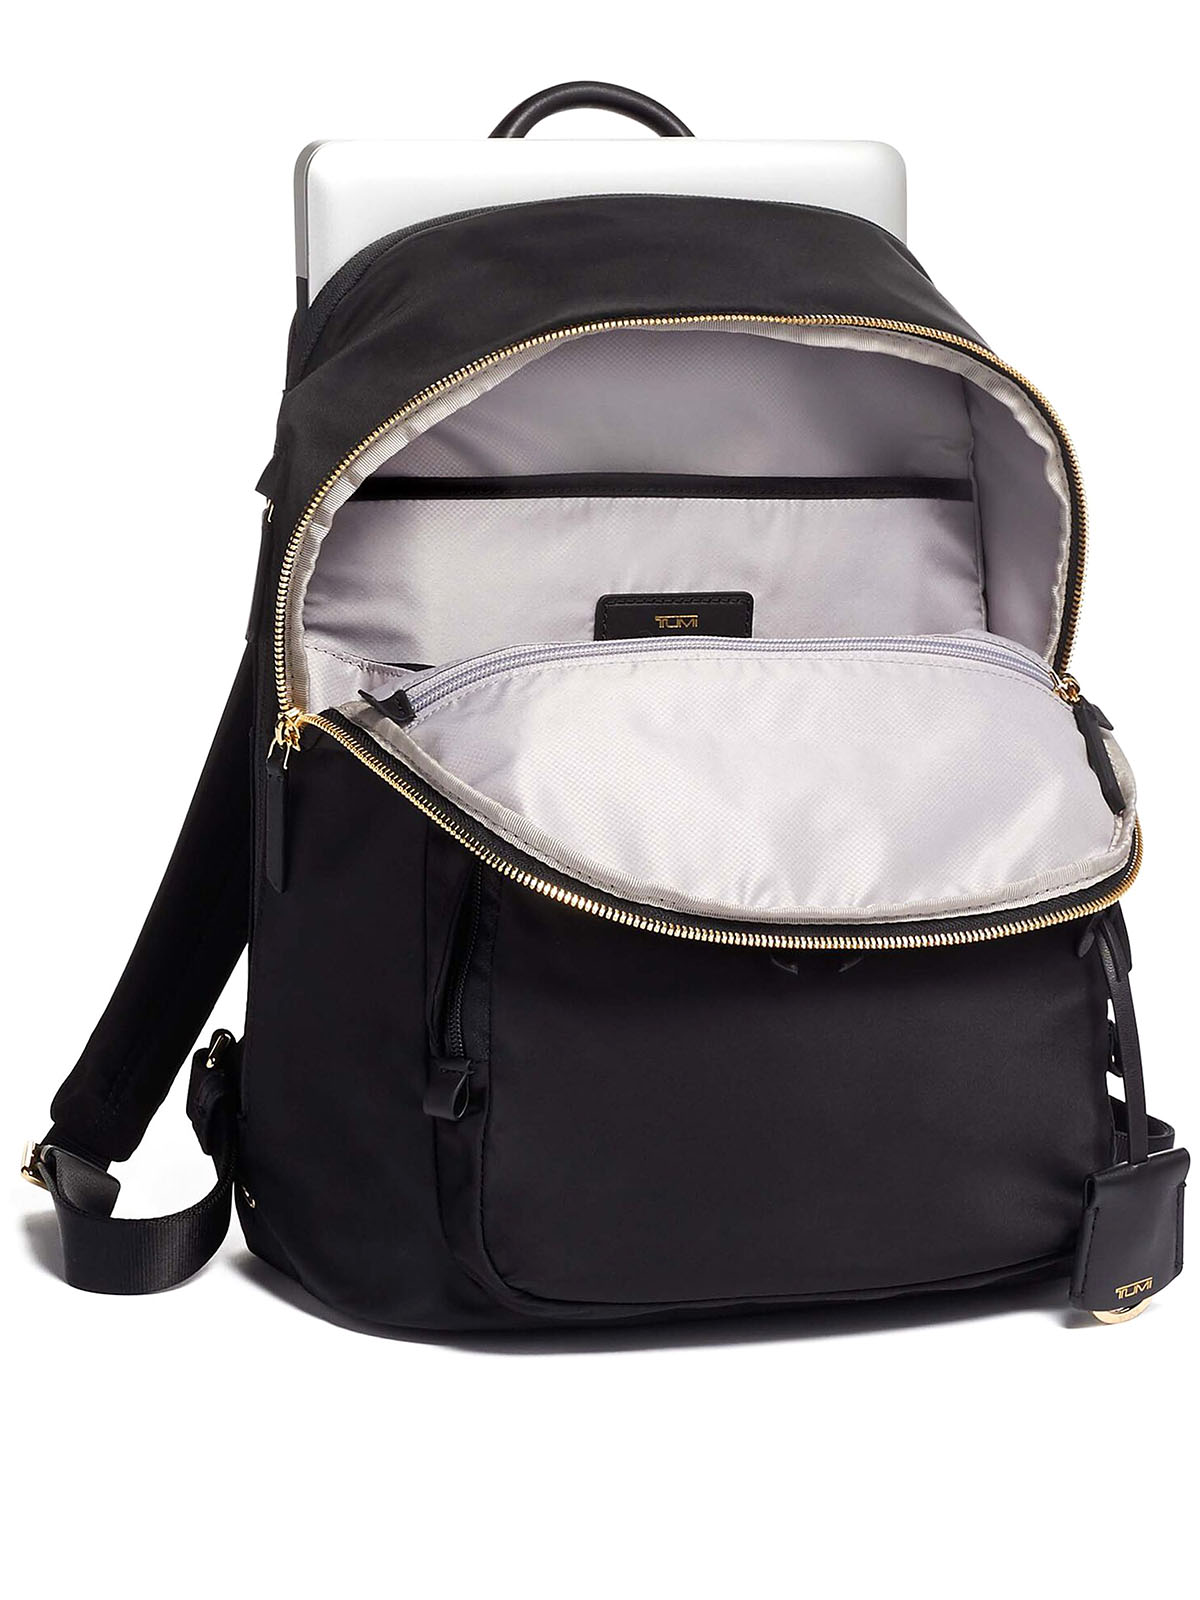 Backpacks Tumi - Voyageur Hilden backpack - 1250491041 | iKRIX.com